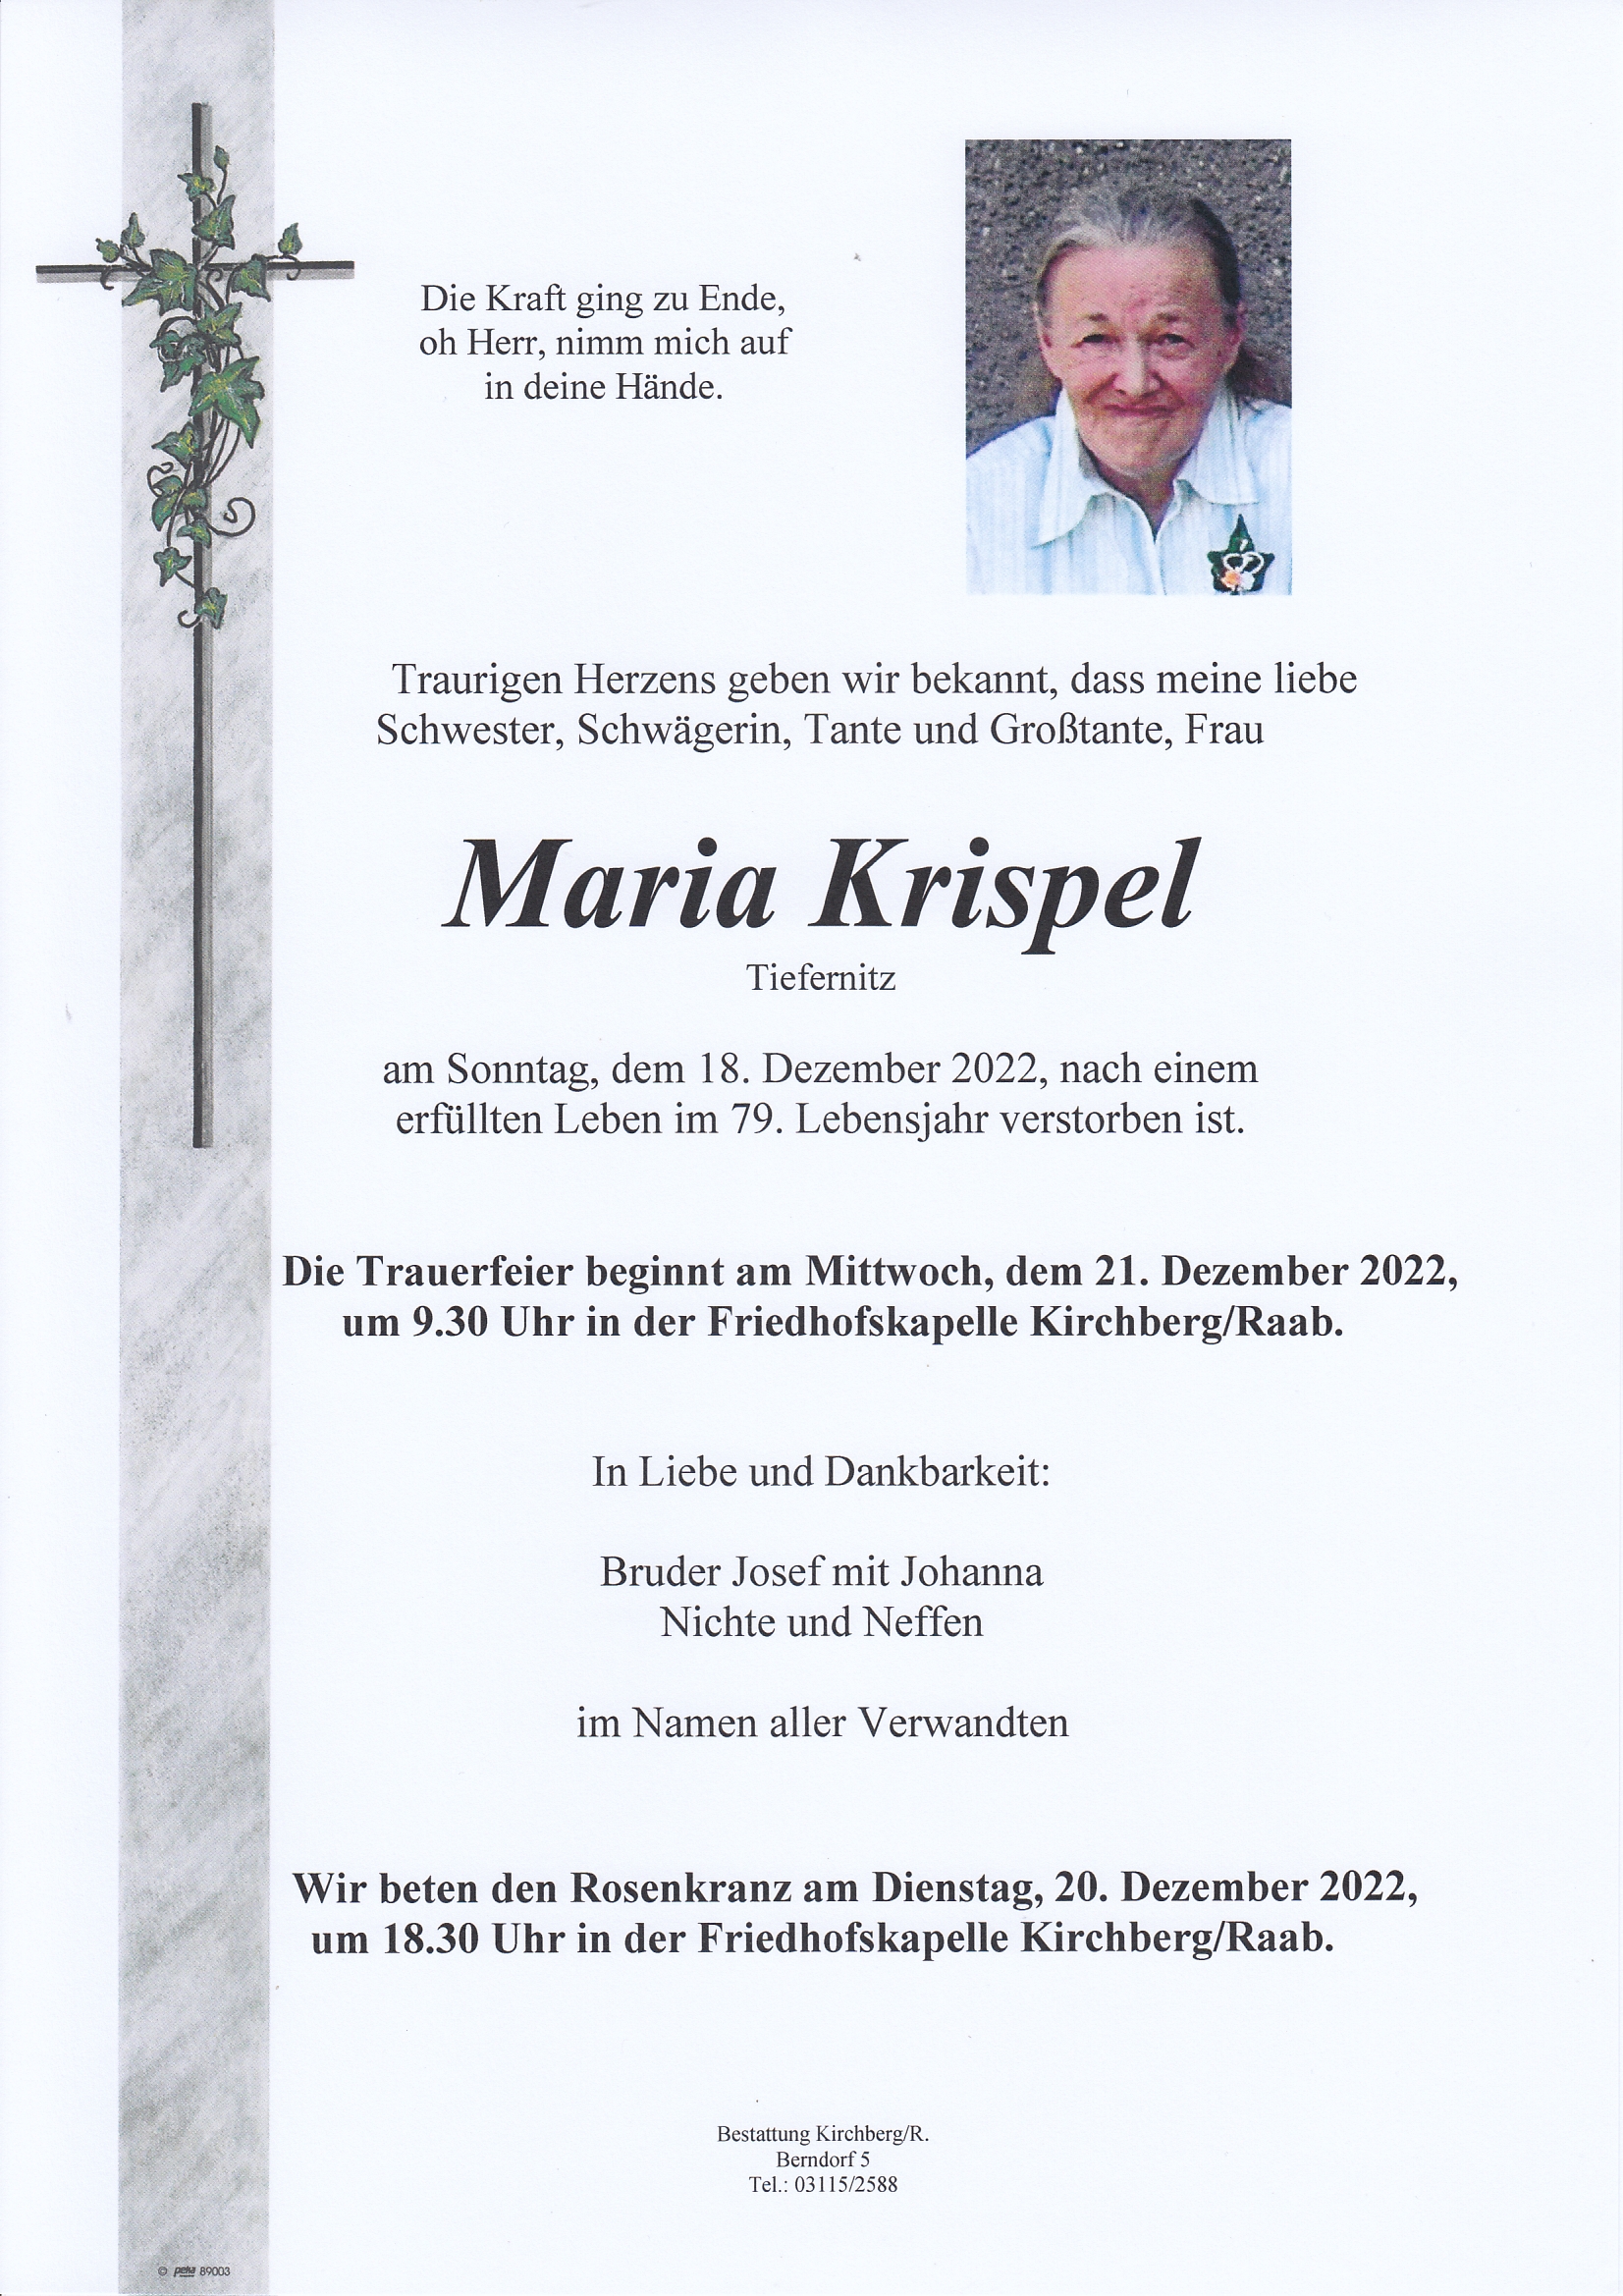 Maria Krispel